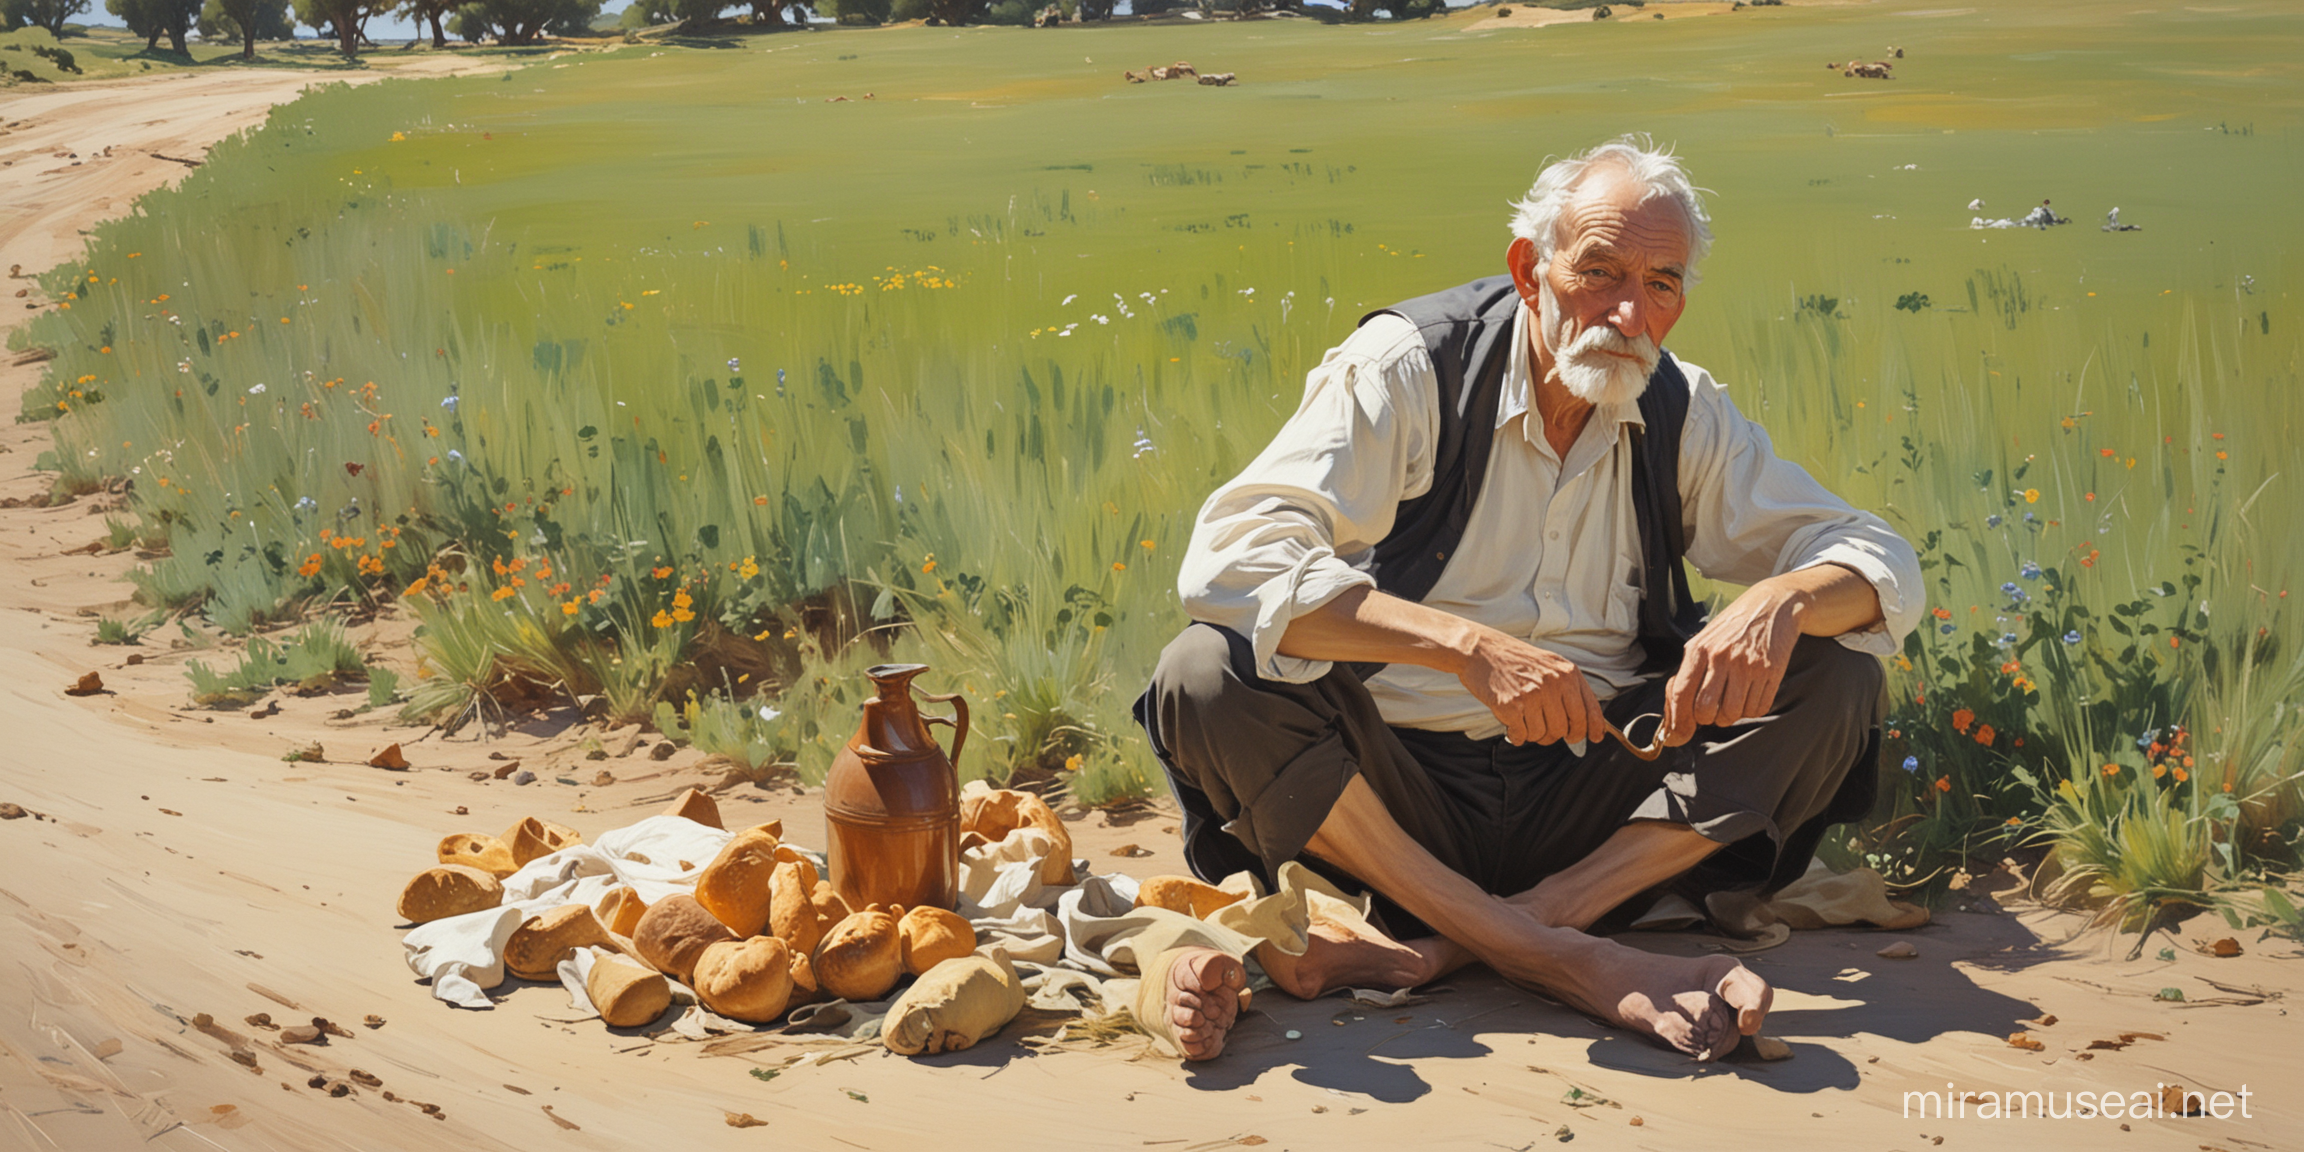 картина в стиле Хоакин Соролья,  старик ивнук , у дороге на траве, в поле, сидят, устали,в руках хлеб и крушка с водой, босой бадинки рядом,в дали стадо коров,